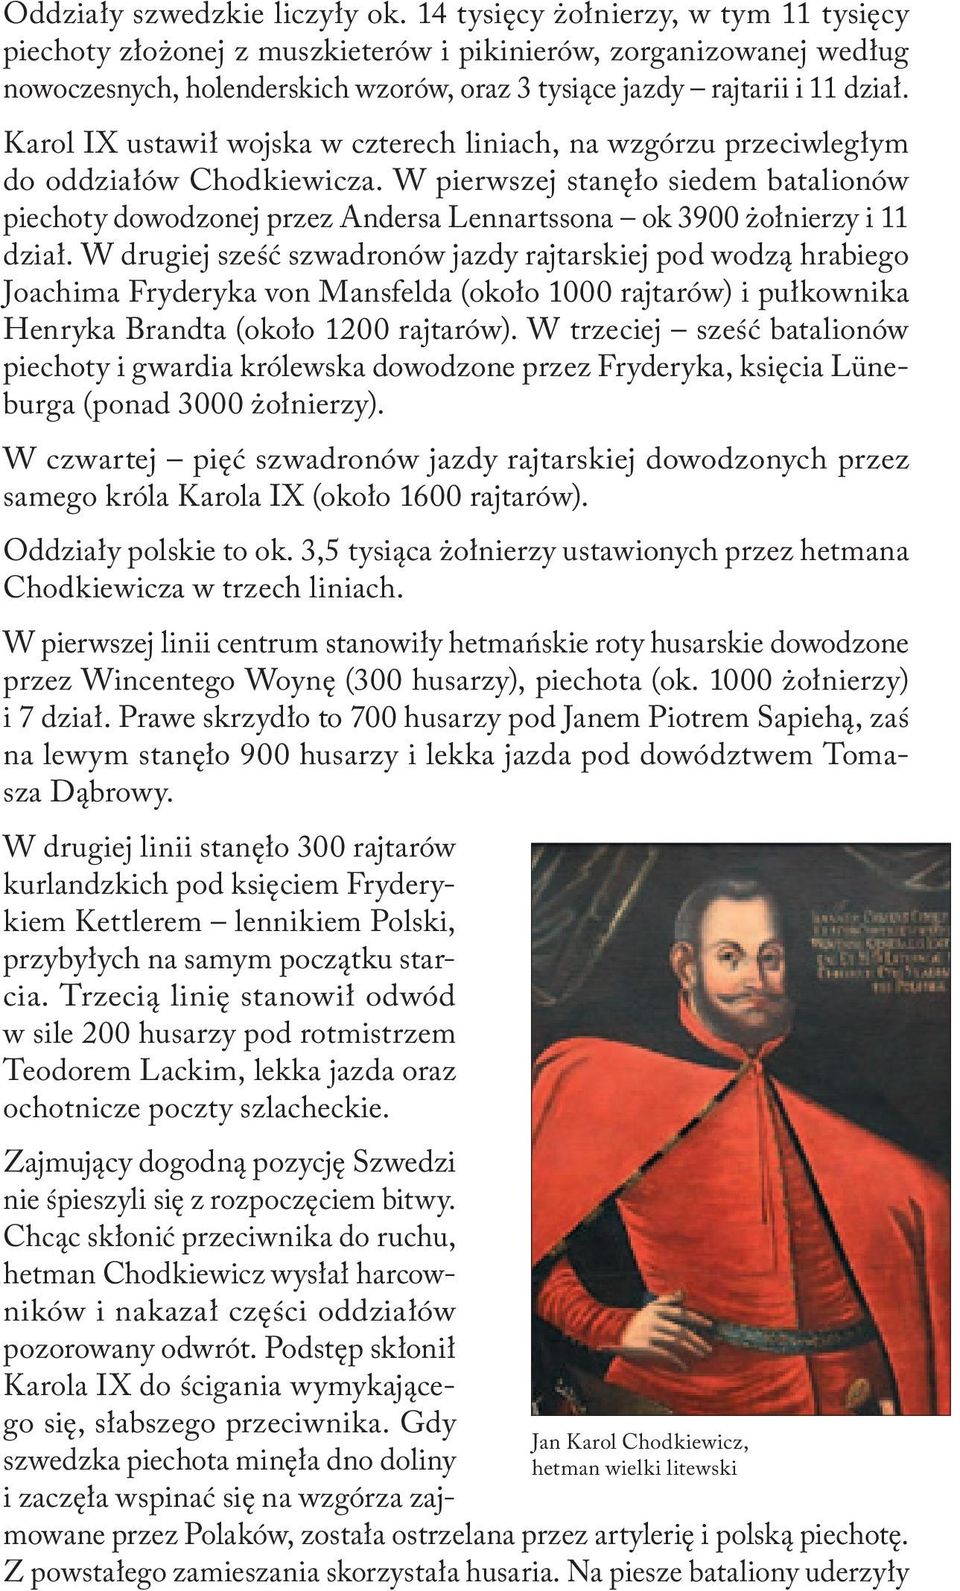 Karol IX ustawił wojska w czterech liniach, na wzgórzu przeciwległym do oddziałów Chodkiewicza.